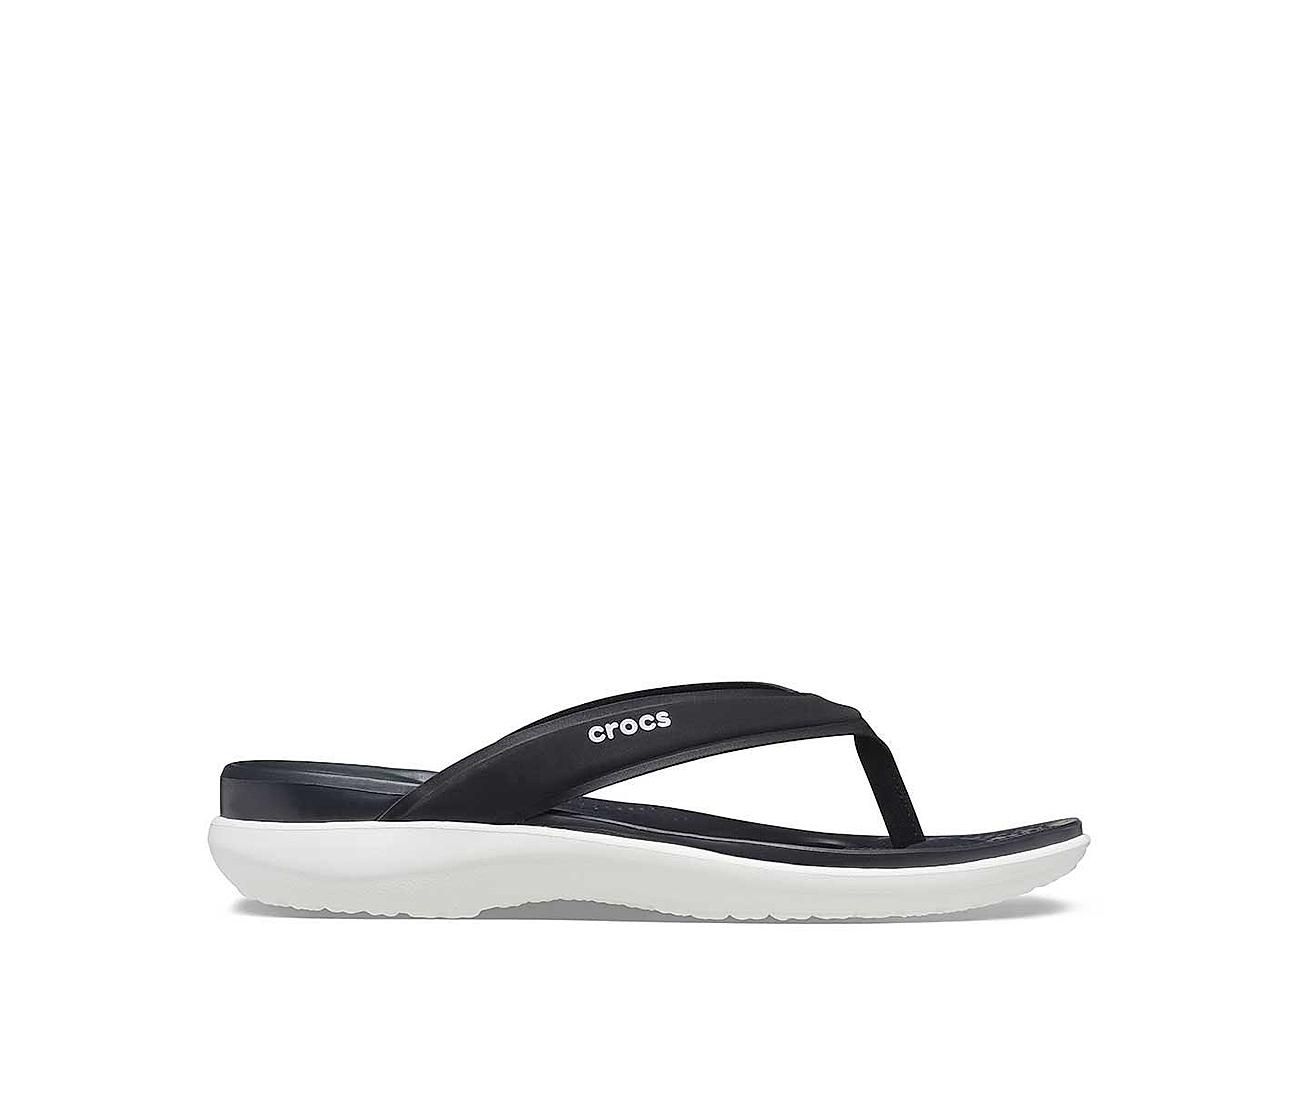 Crocs Unisex Classic Two-Strap Slide Sandals - Black | eBay-hkpdtq2012.edu.vn